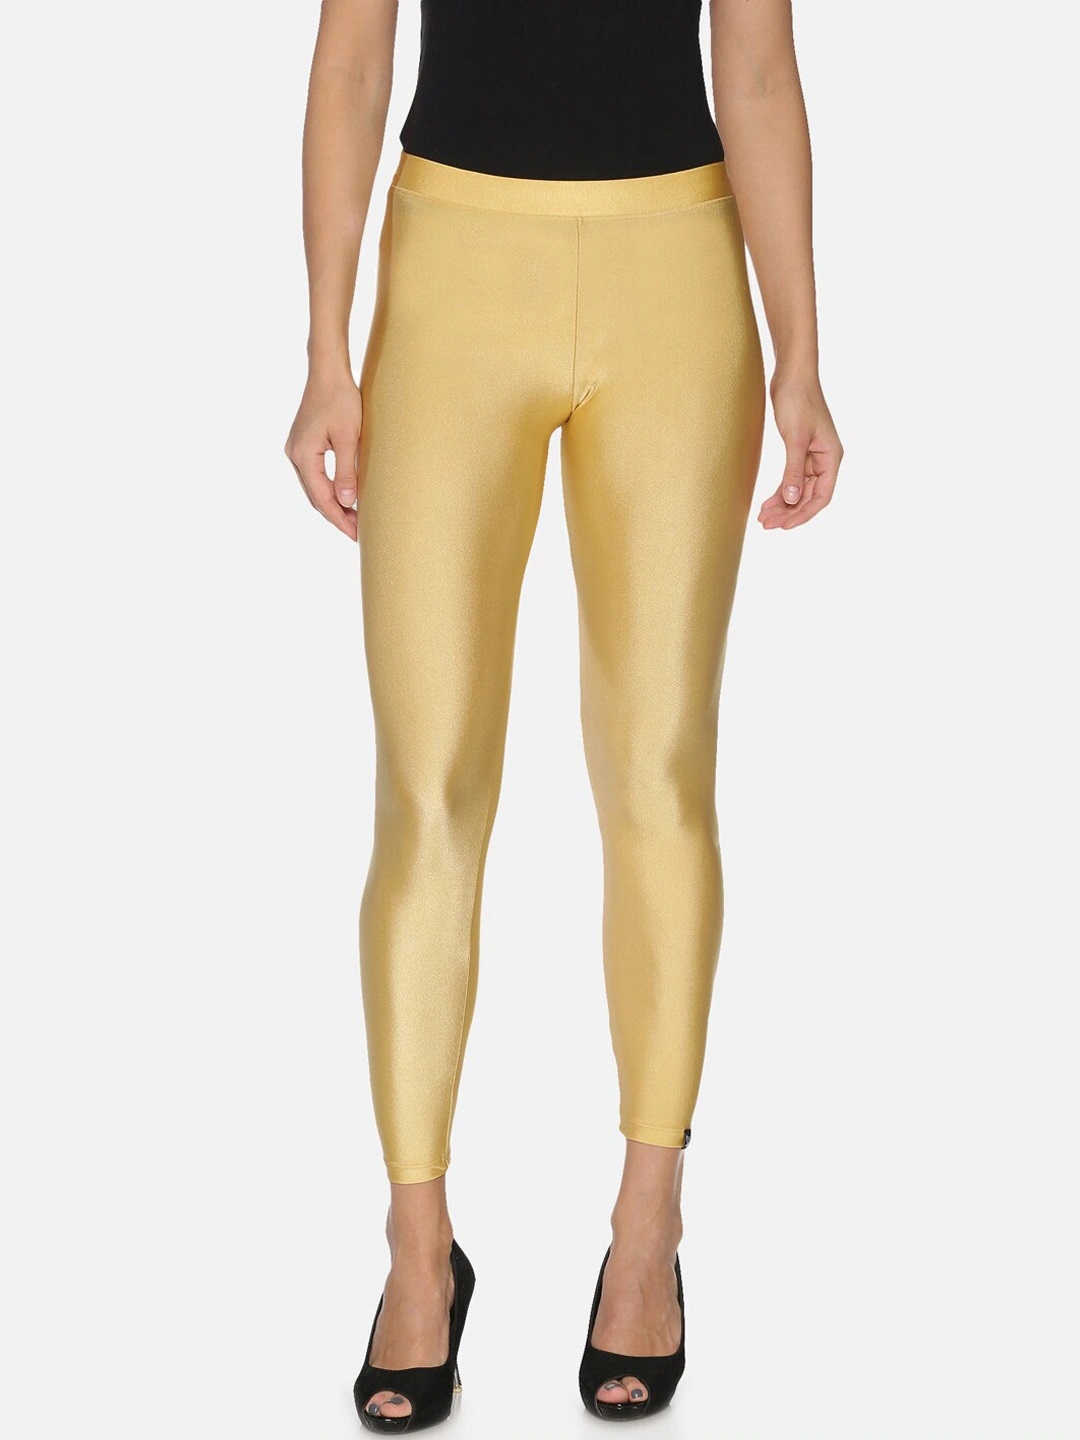 Prisma Rose Gold Shimmer Leggings | Shop Now